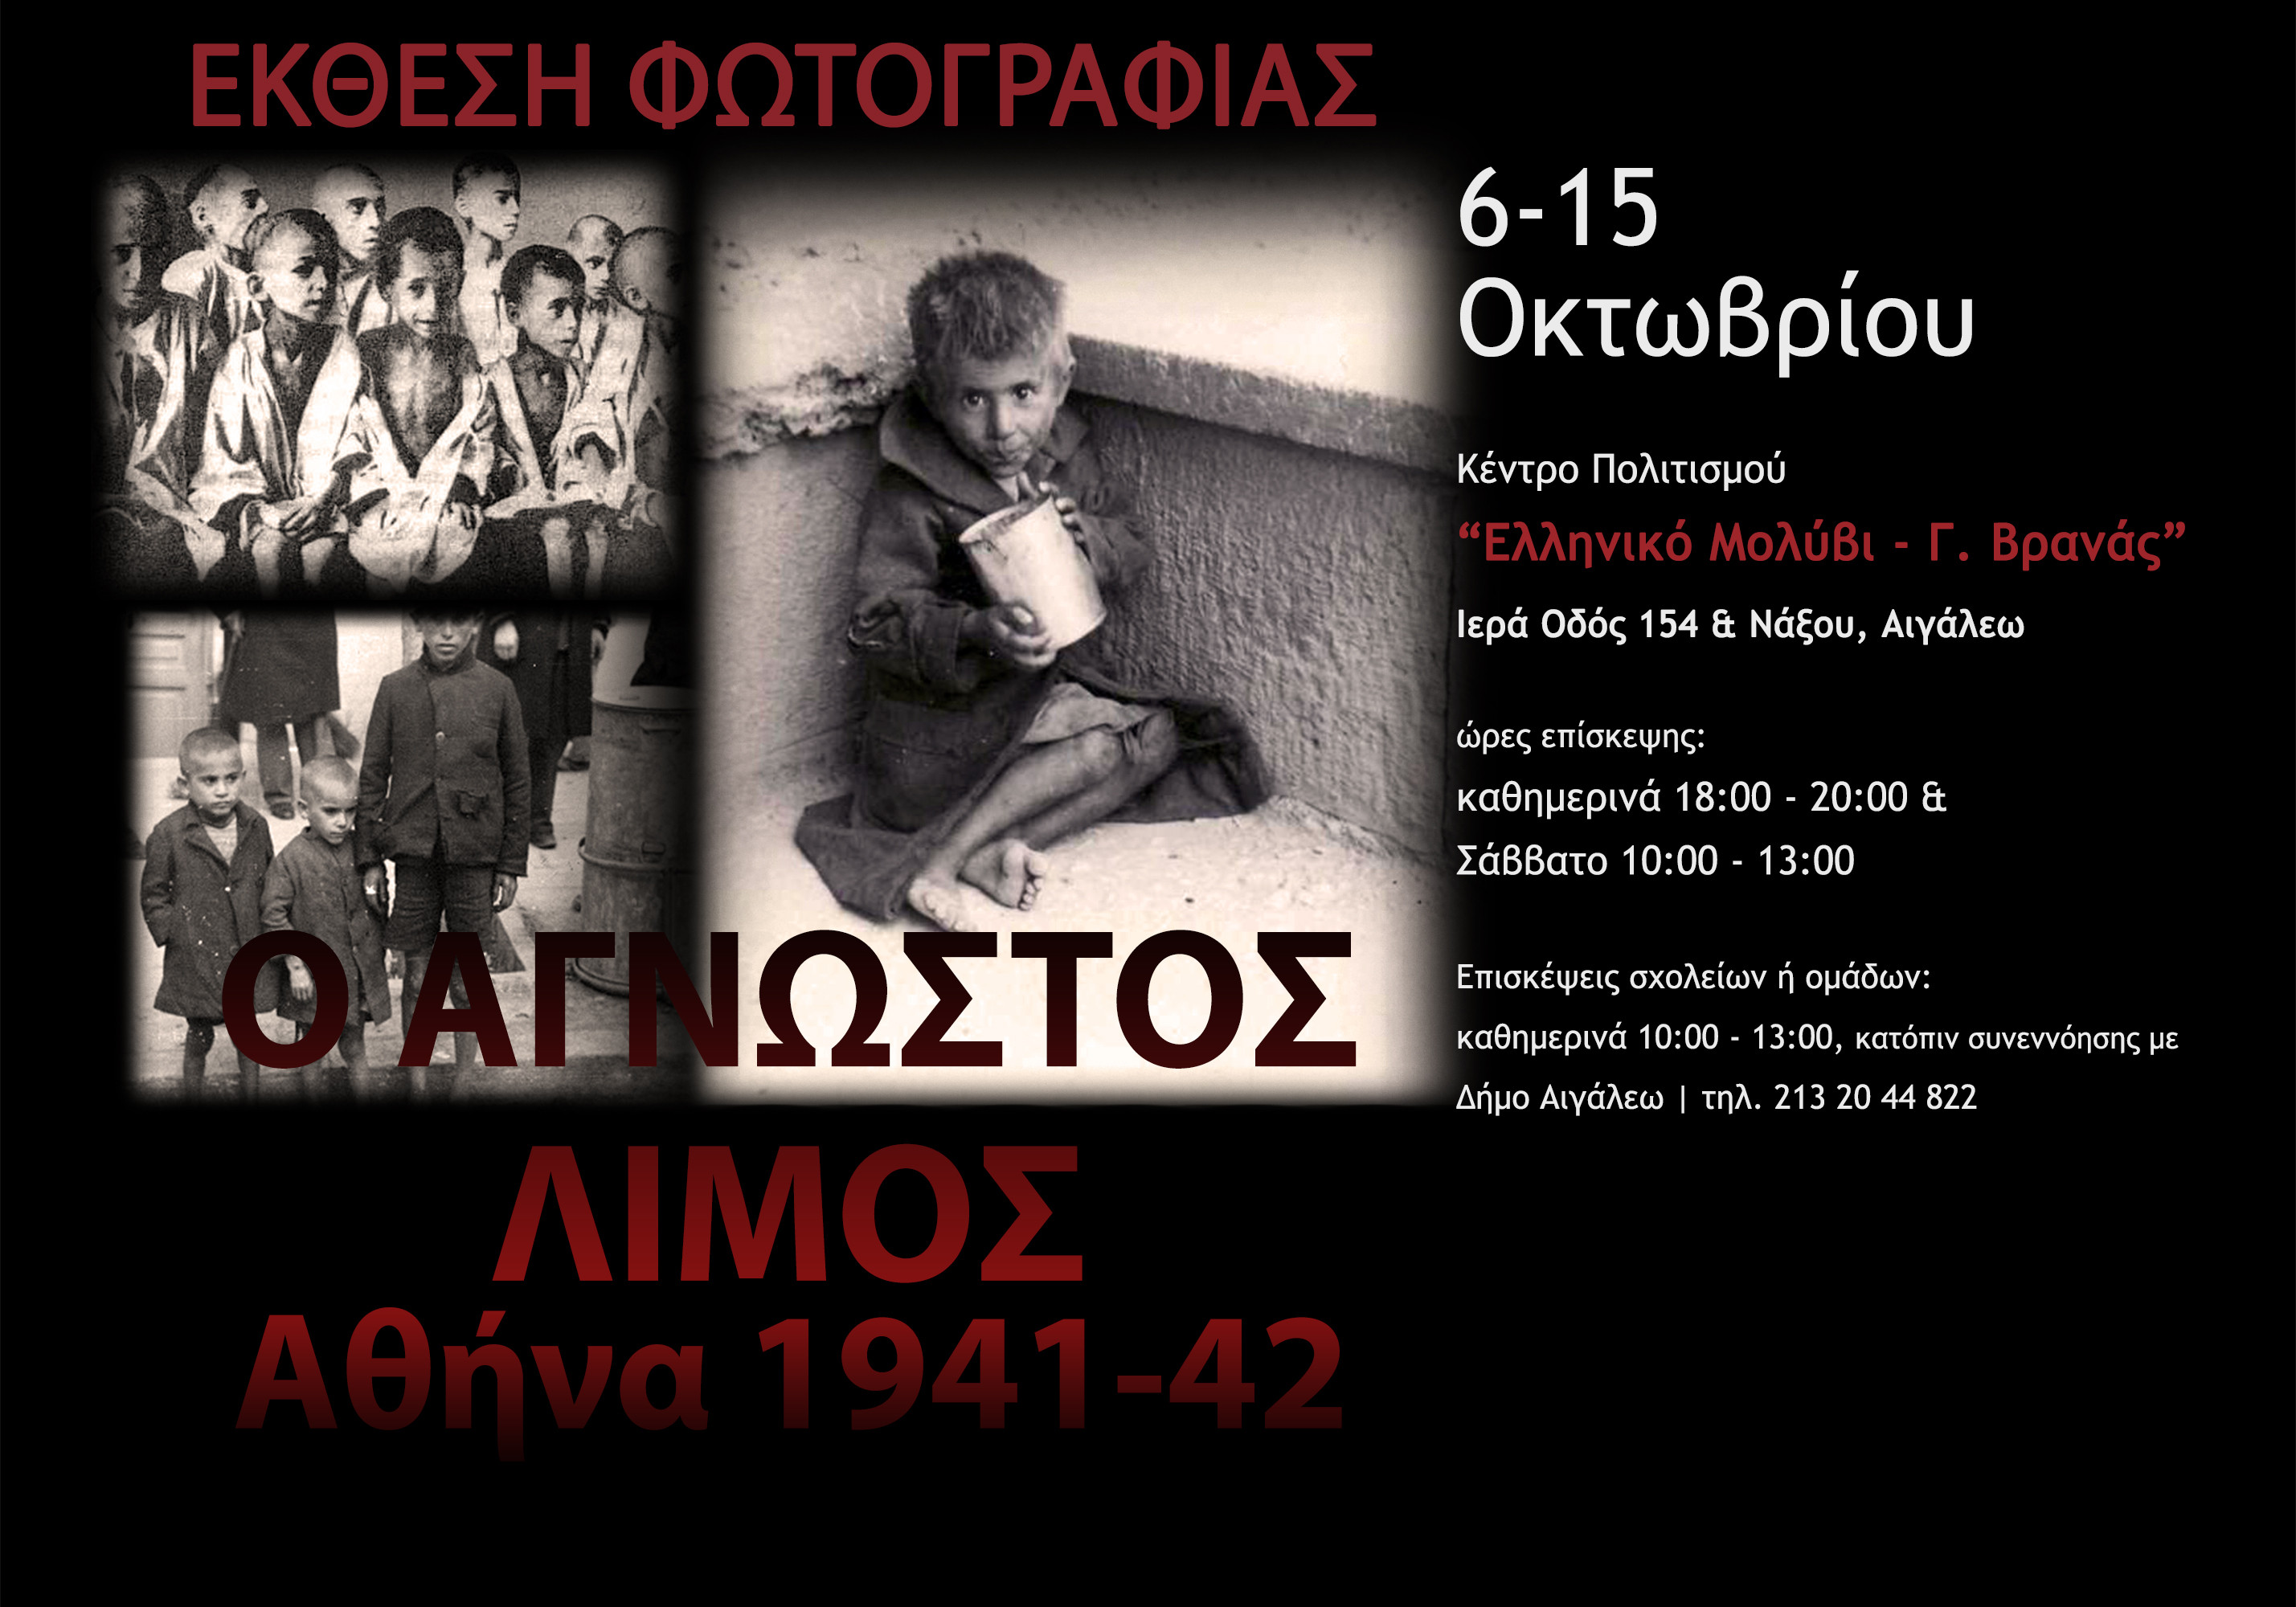 Έκθεση φωτογραφίας για τον «άγνωστο λιμό: Αθήνα 1941-1942»